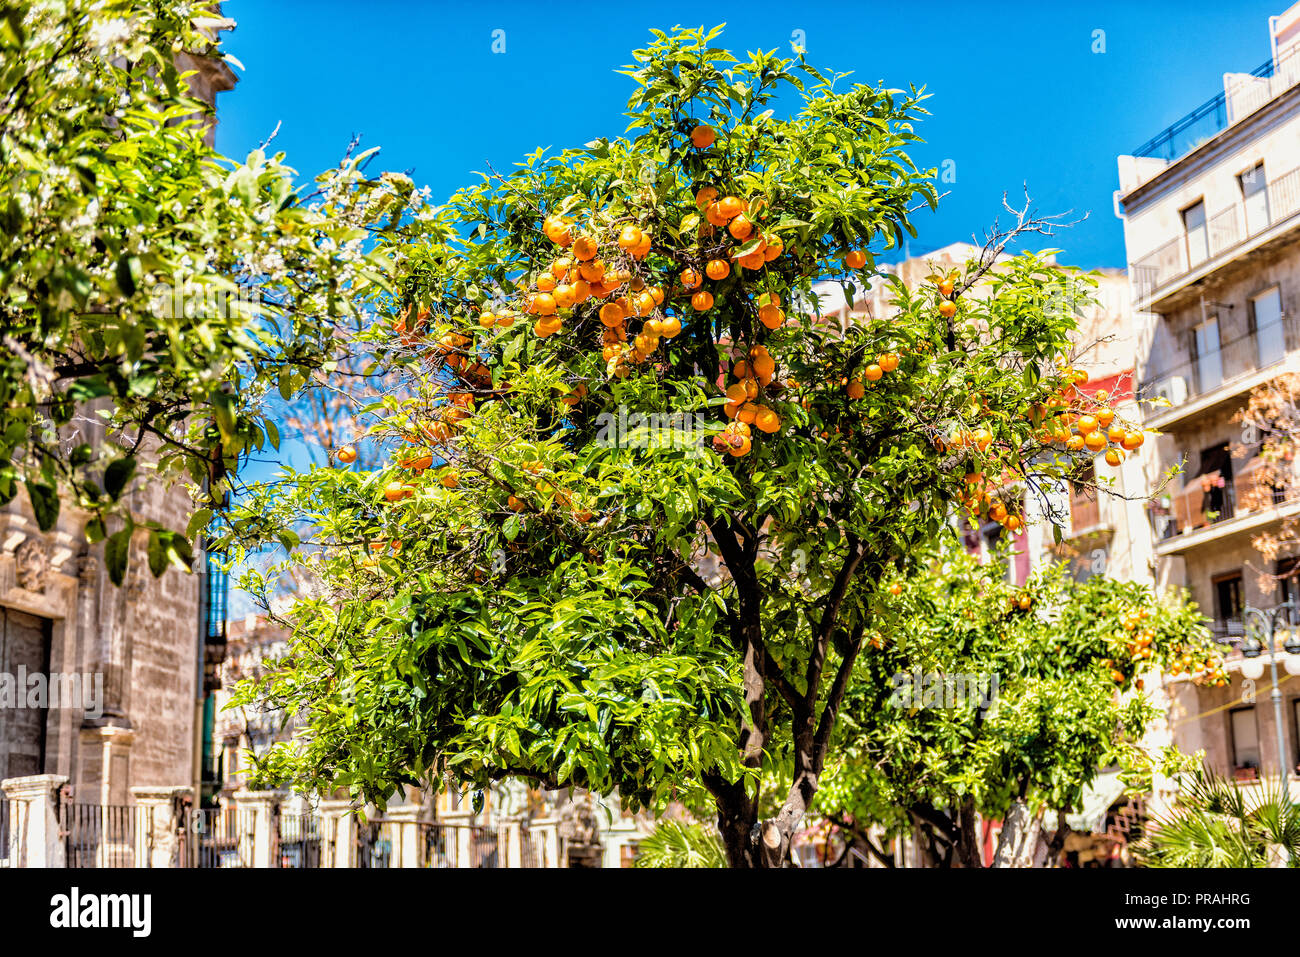 Arbre Orange sur place de la ville de Valence Espagne Banque D'Images